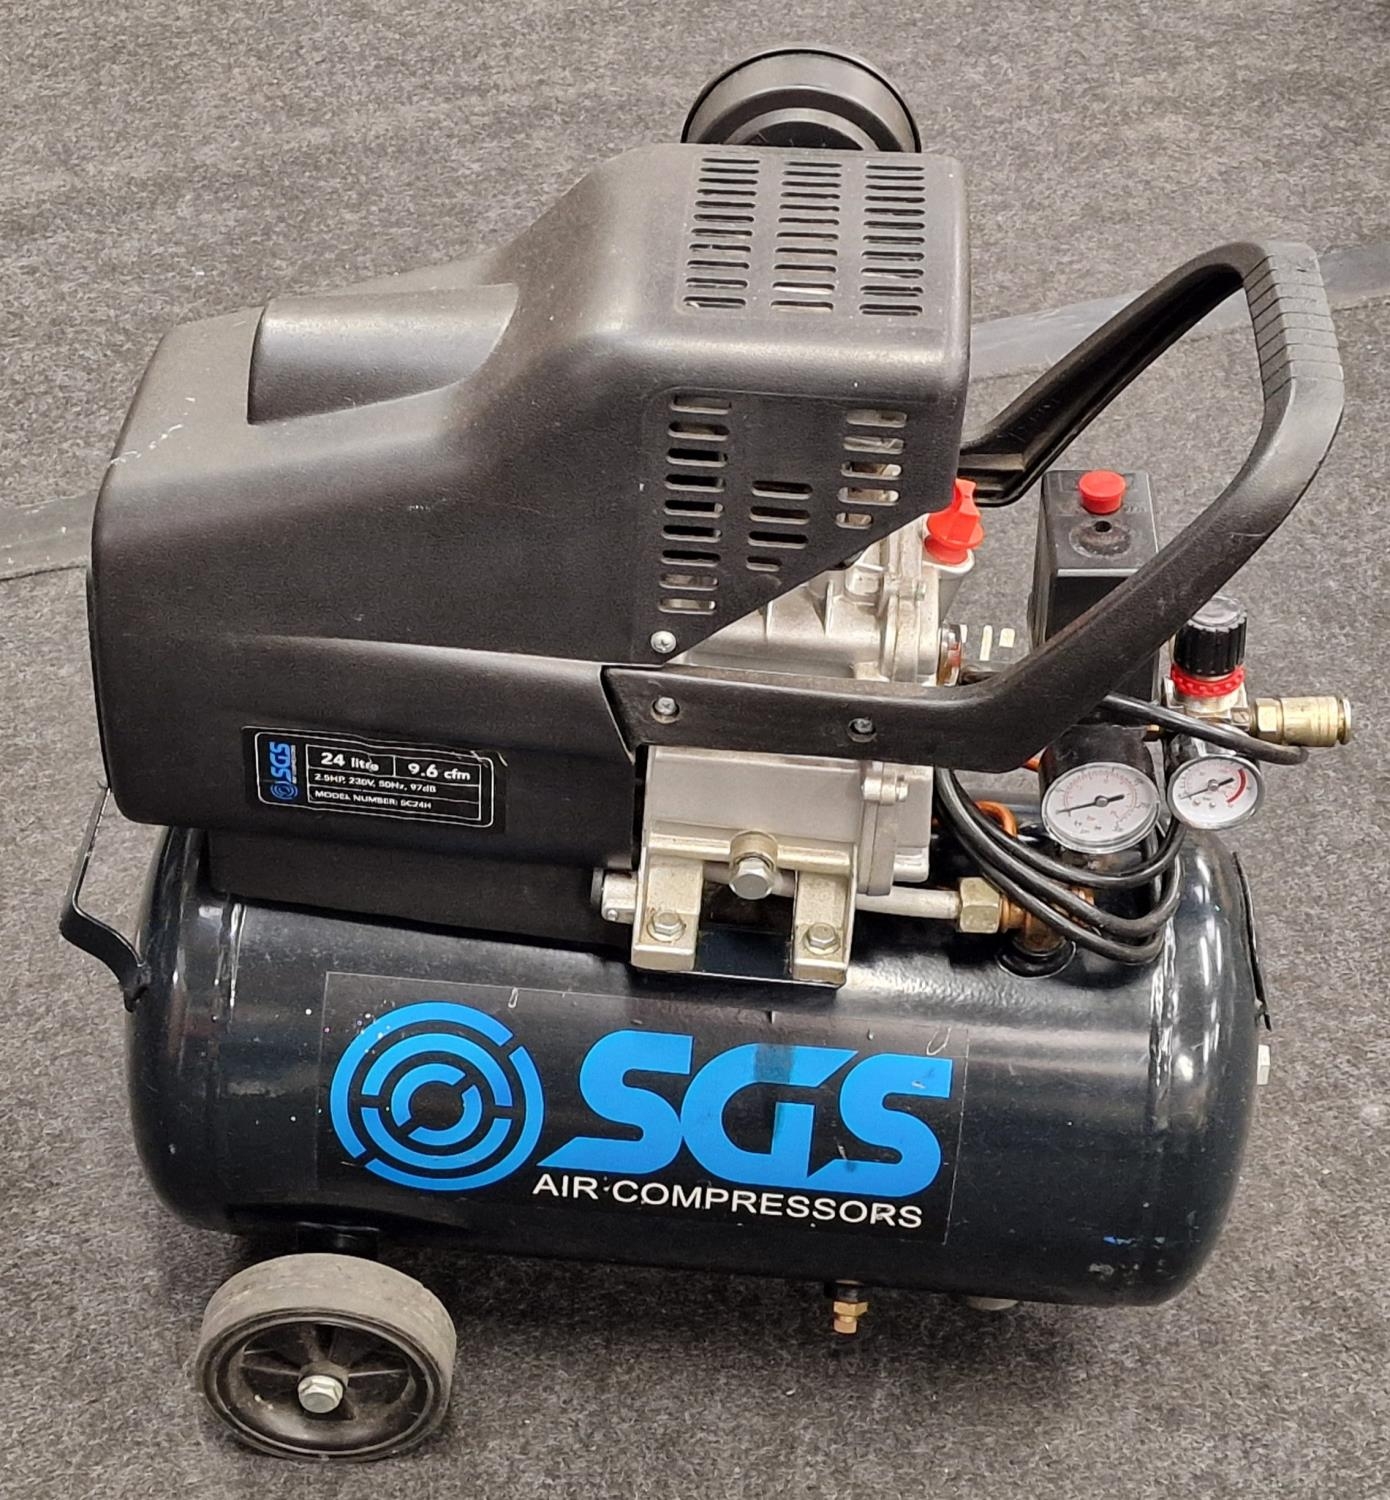 SGS SVSC24H 24 litre air compressor.